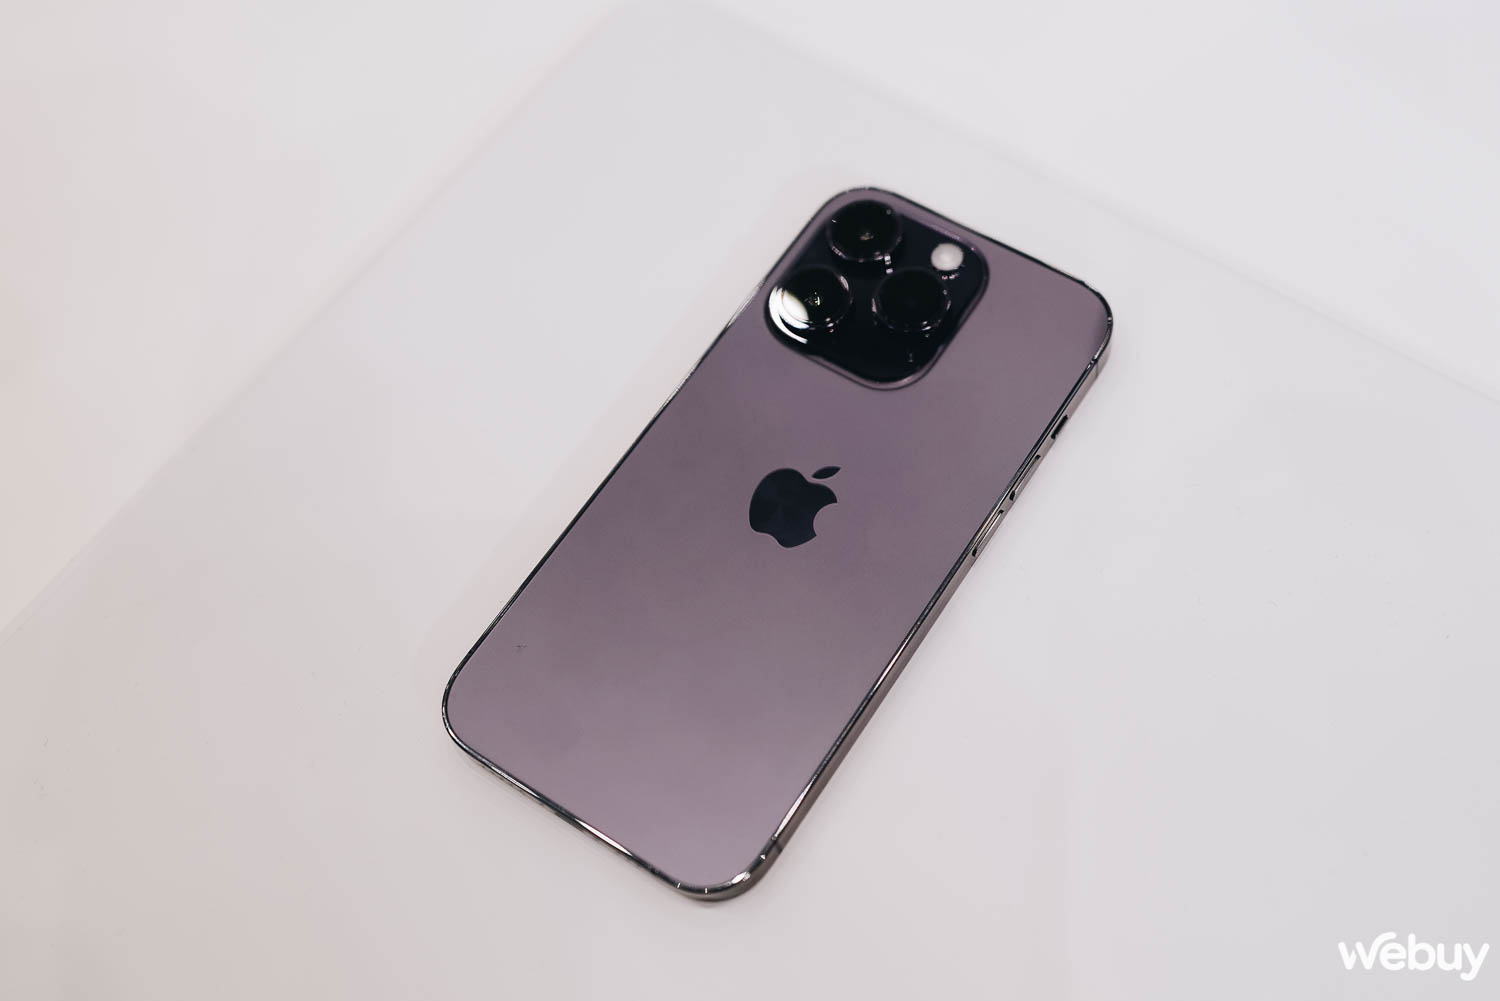 Cận cảnh iPhone 14 Pro tại sự kiện Apple: Thiết kế 'Dynamic Island', màu tím mới, loại bỏ khay SIM, giá không đổi - Ảnh 2.